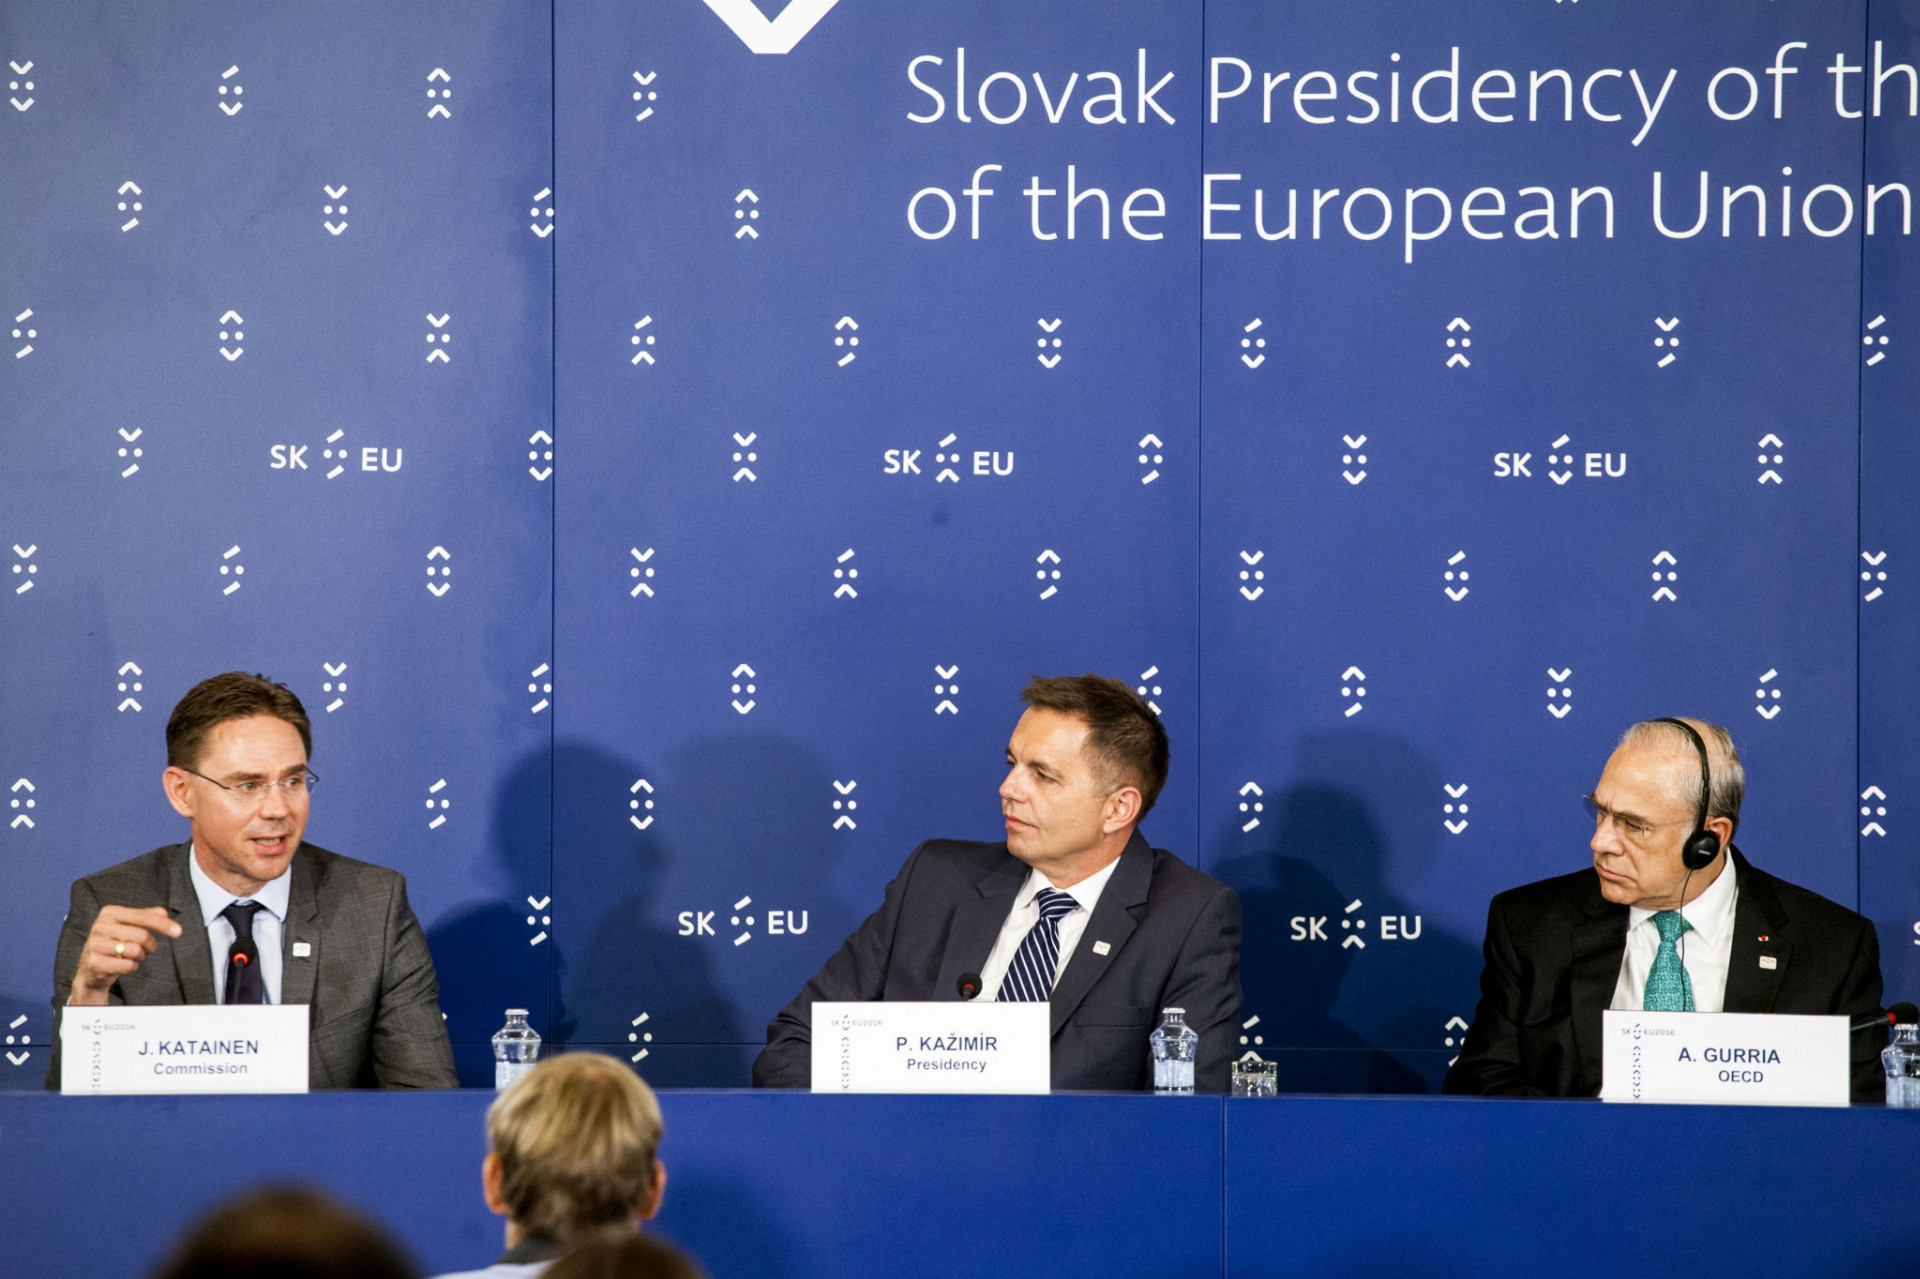 Ecofin, teda stretnutie ministrov financií, zasadal v Bratislave prvýkrát. Zúčastnili sa na ňom aj viceprezident Európskej komisie Jyrki Katainen, minister financií Peter Kažimír, ale aj generálny sekretár OECD Angel Gurria (zľava).